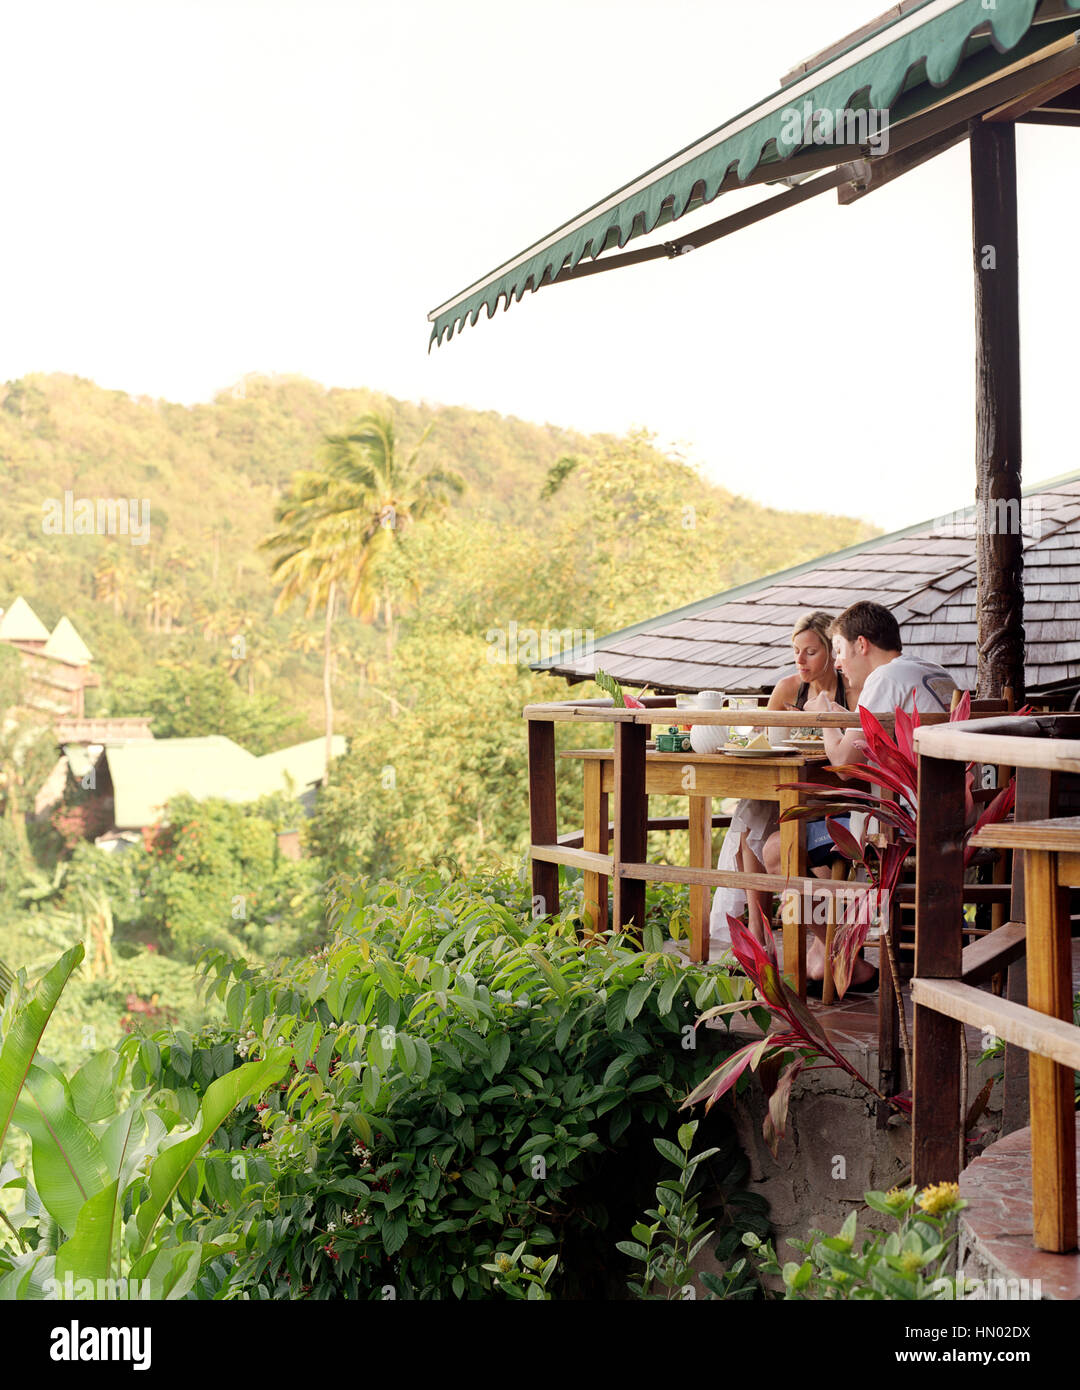 Una coppia giovane gode di prima colazione presso il ristorante Dasheene a Ladera Resort. Ladera è considerato uno dei migliori resorts nei Caraibi. Soufriere, St Foto Stock